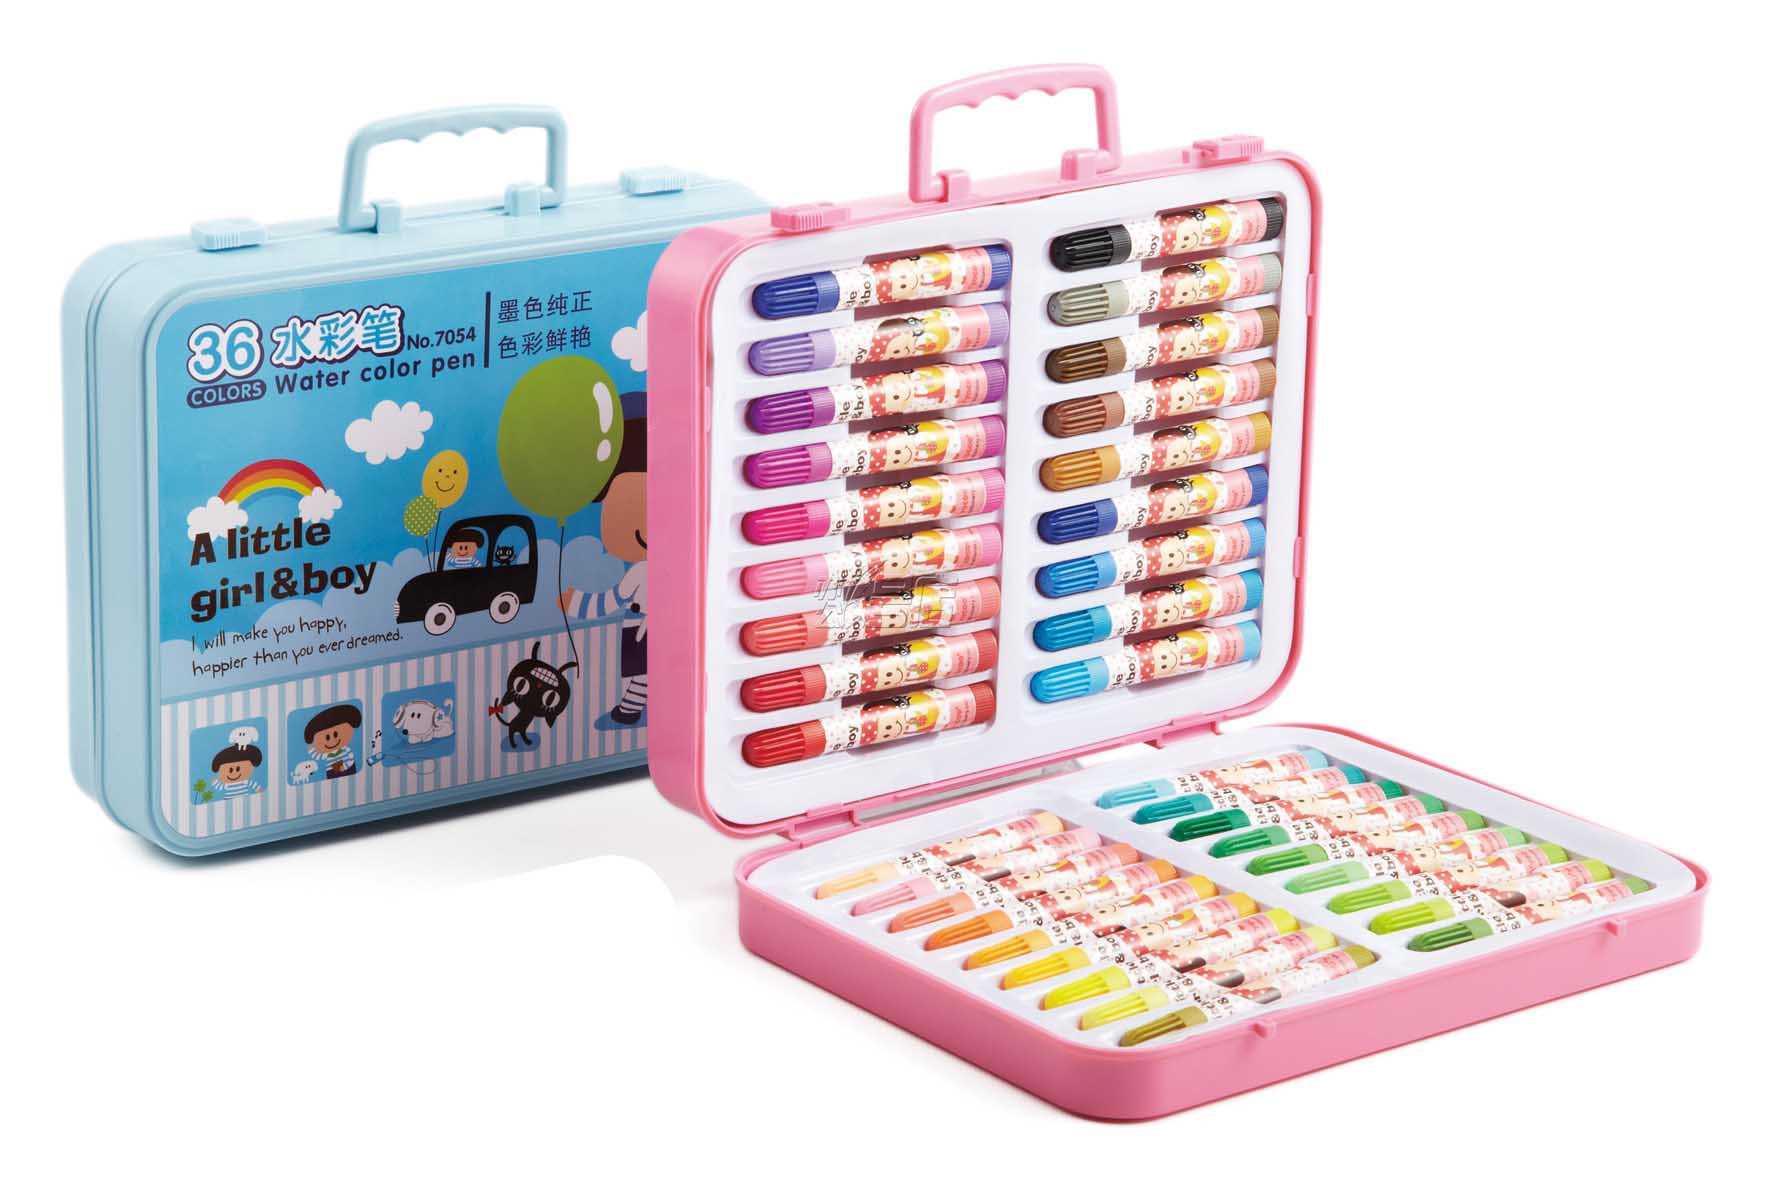 得力7054水彩笔 彩色水笔 儿童绘画笔水性水彩笔 36色盒装水彩笔